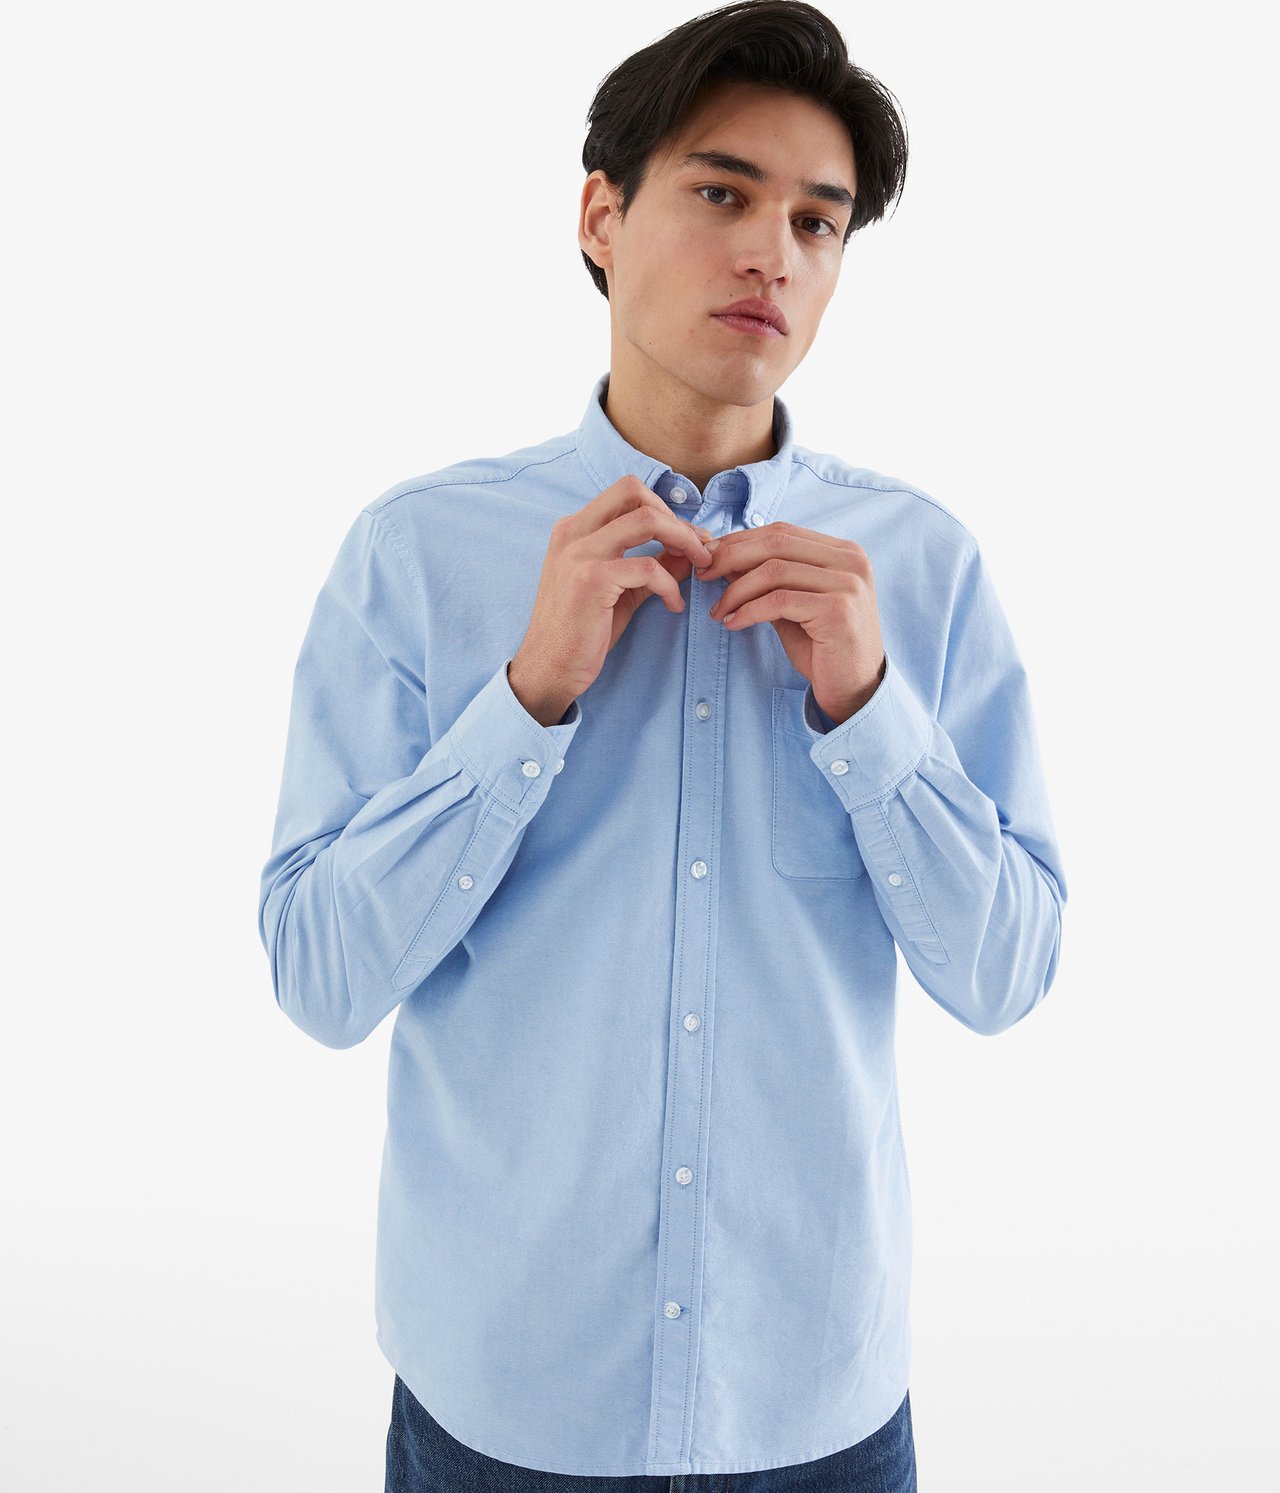 Oxfordskjorta regular fit - Ljusblå - 189cm / Storlek: M - 1